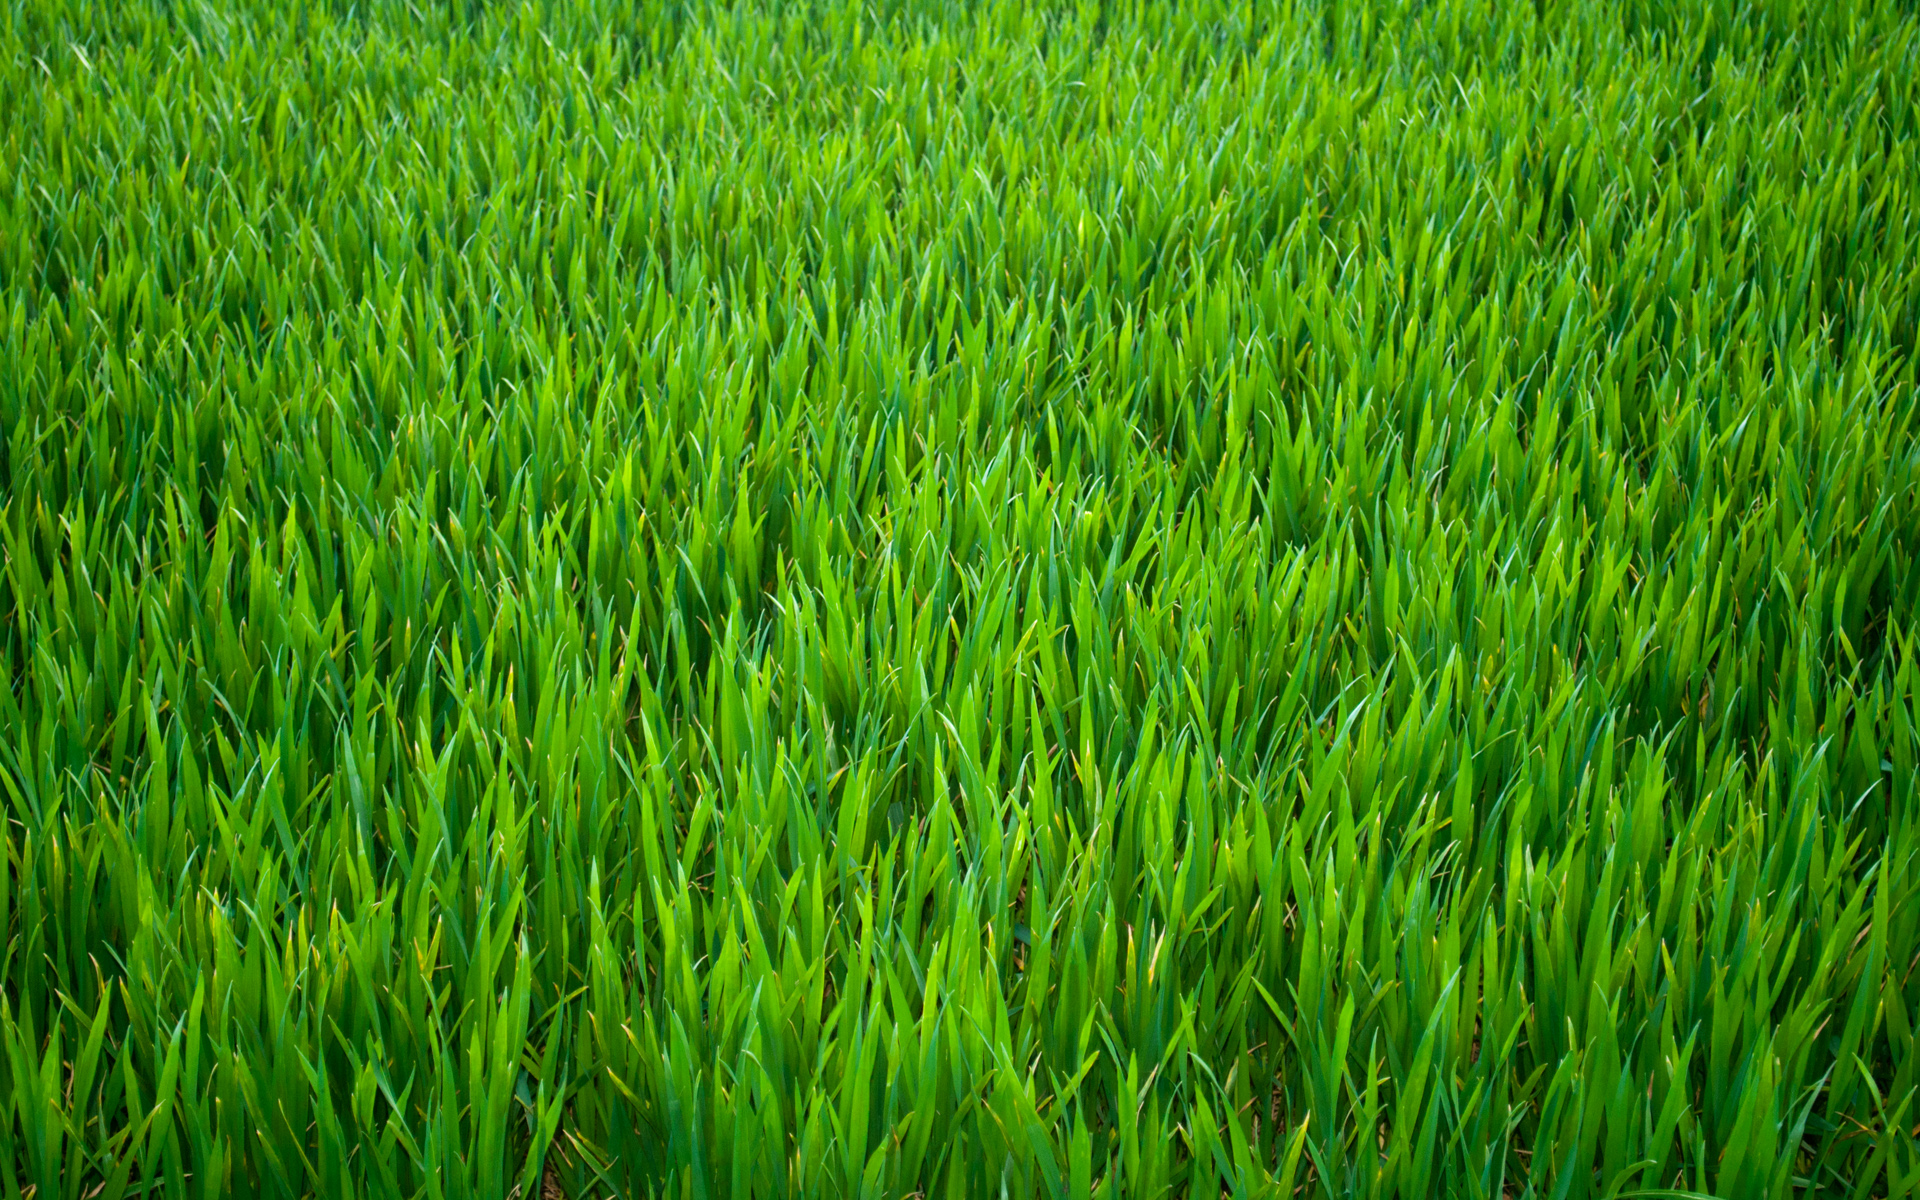 r101-grass11.jpg